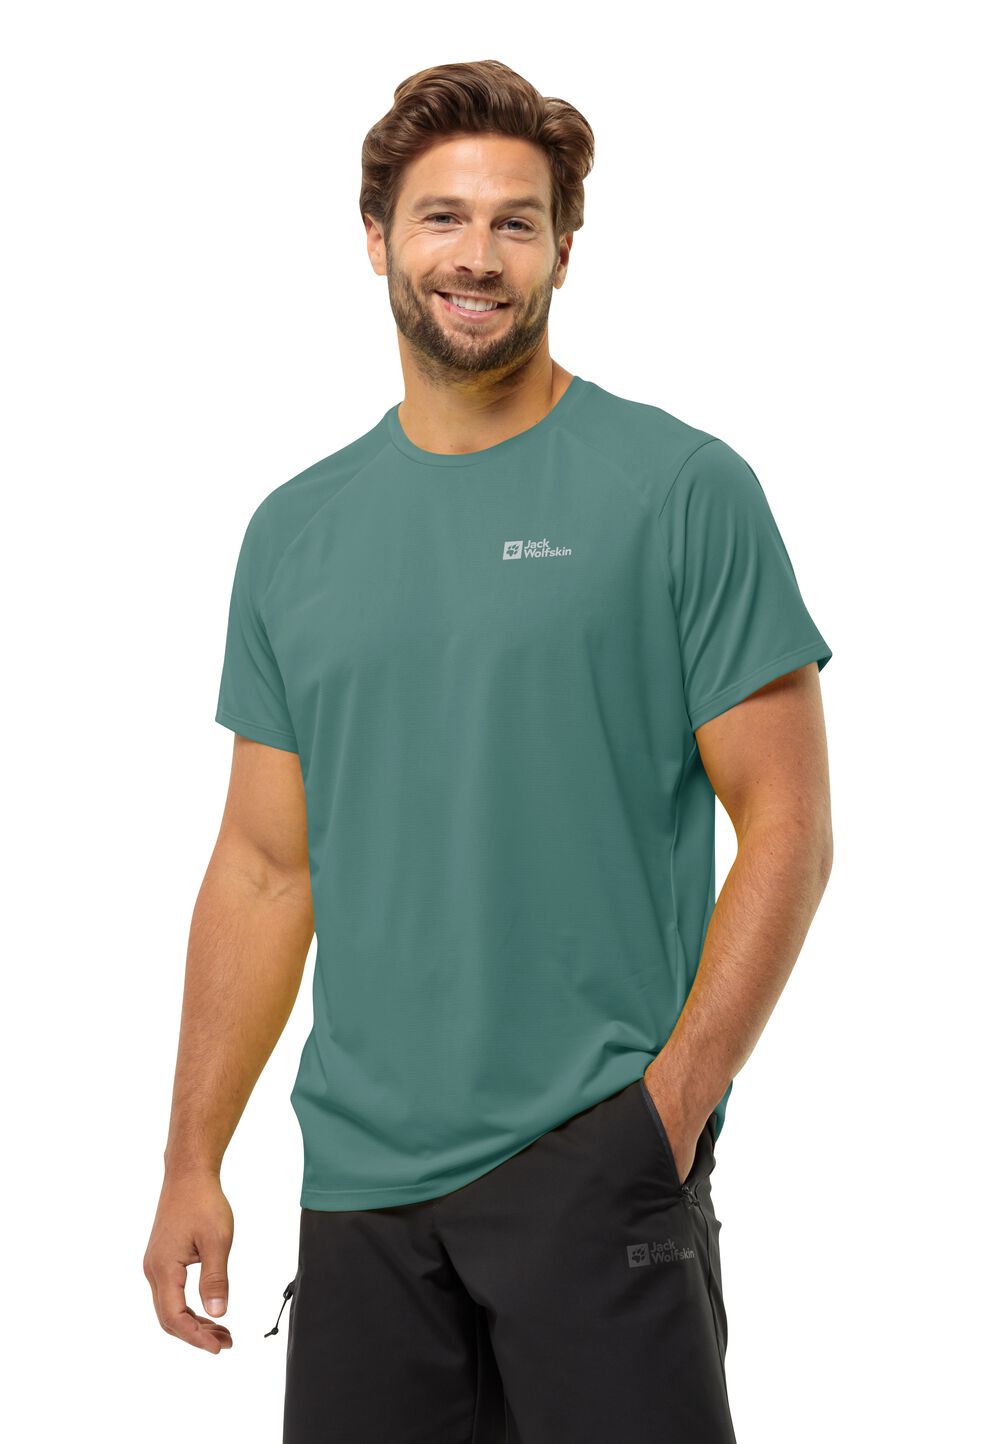 Jack Wolfskin Prelight Trail T-Shirt Men Functioneel shirt Heren XL jade green jade green